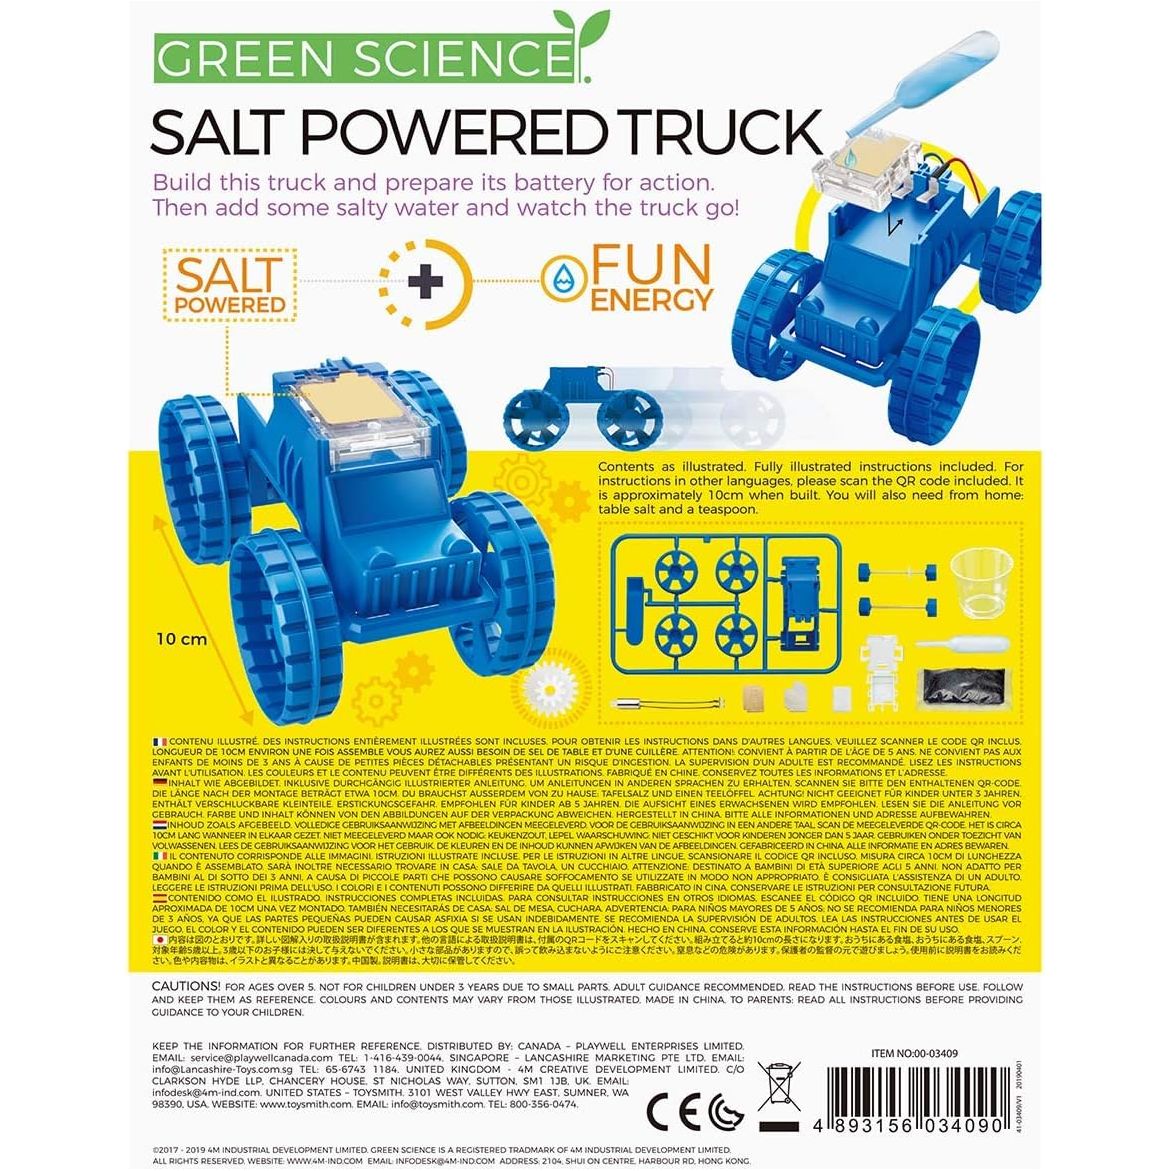 4M Green Science - Salt-powered Truck